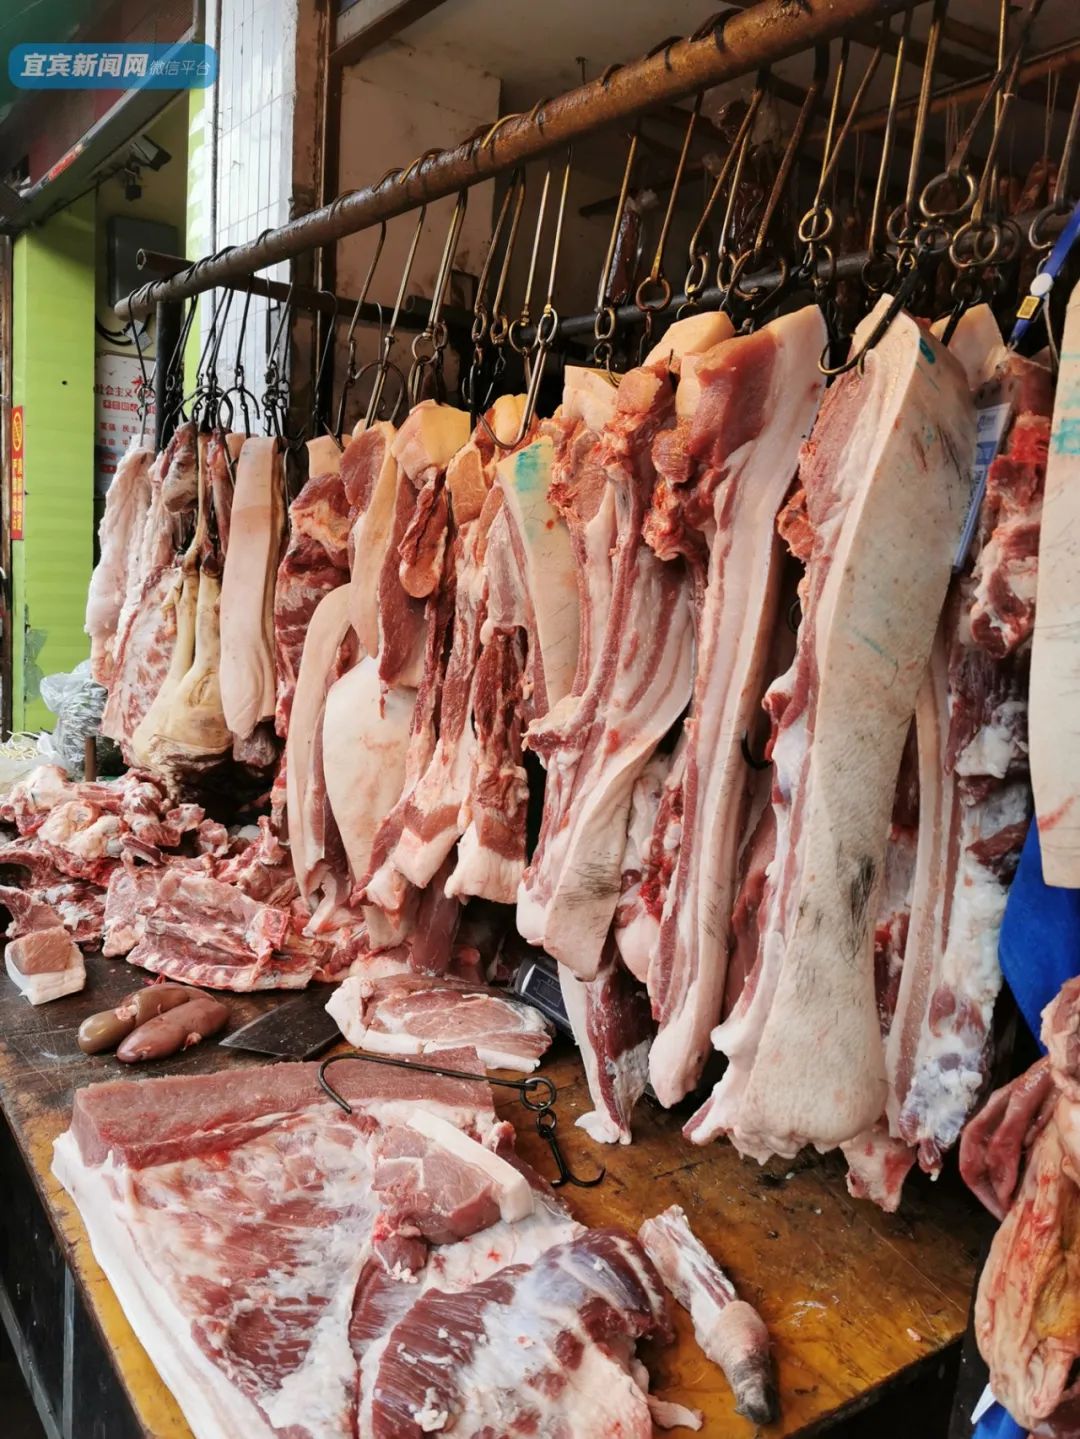 江北新街农贸市场猪肉价格也因此迎来了反弹大家对猪肉的购买热情